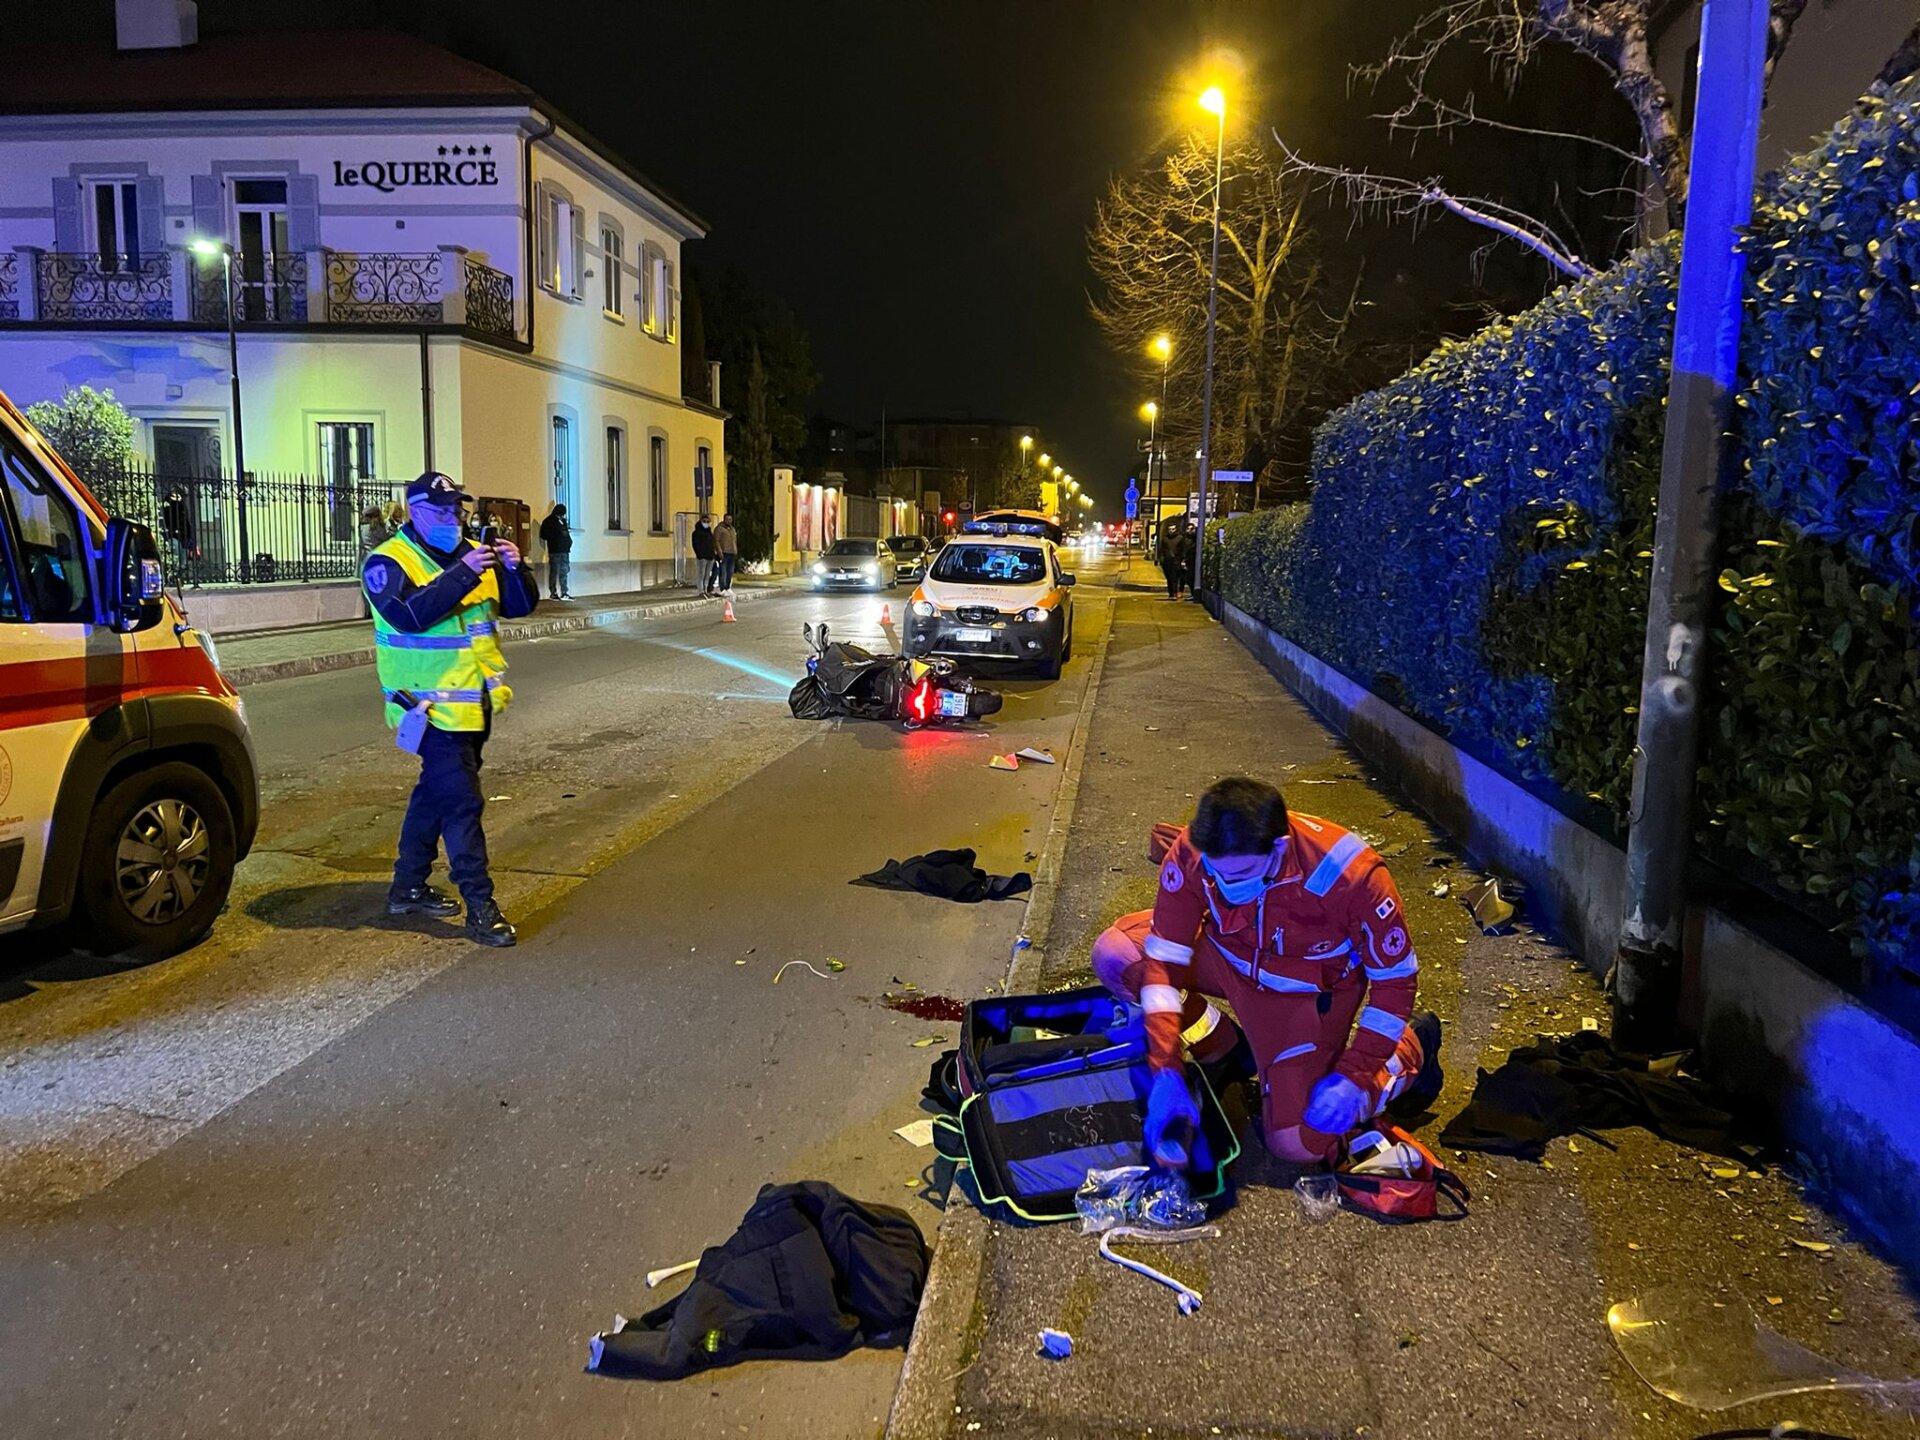 Monza incidente via Cederna centauro ferito ambulanza